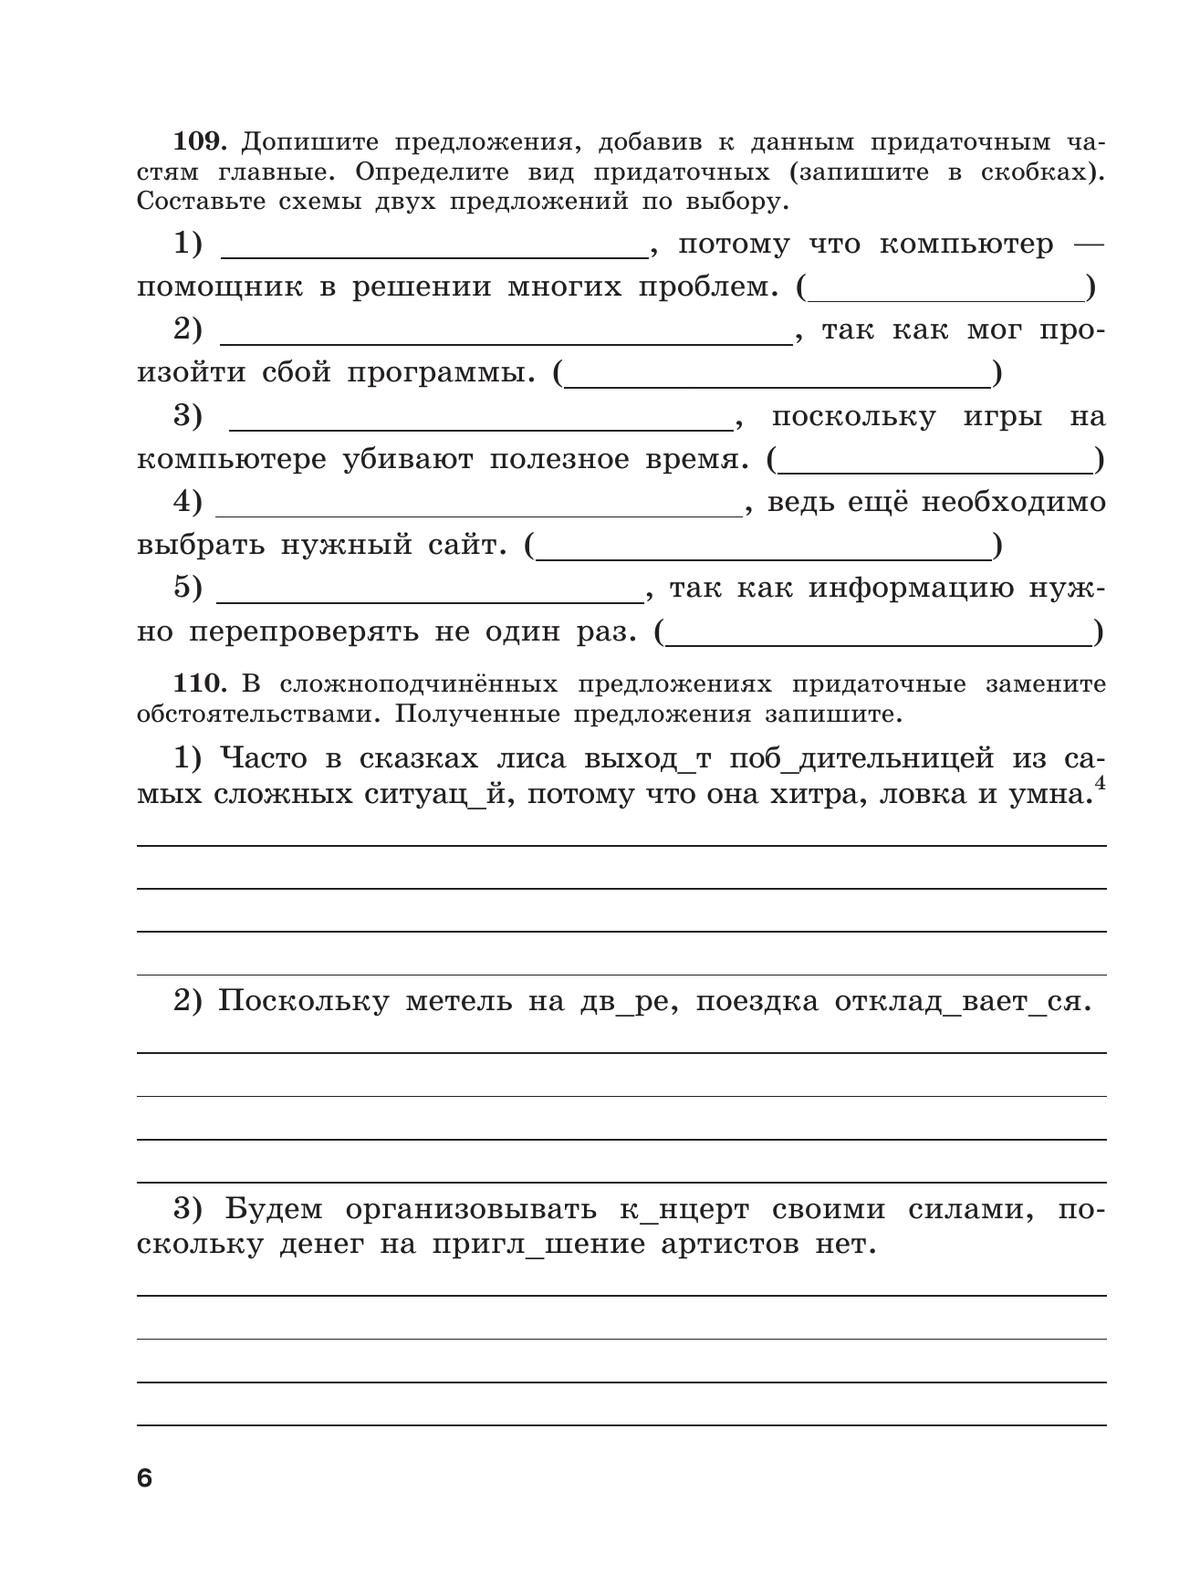 Скорая помощь по русскому языку. Рабочая тетрадь. 9 класс. В 2 ч. Часть 2 8